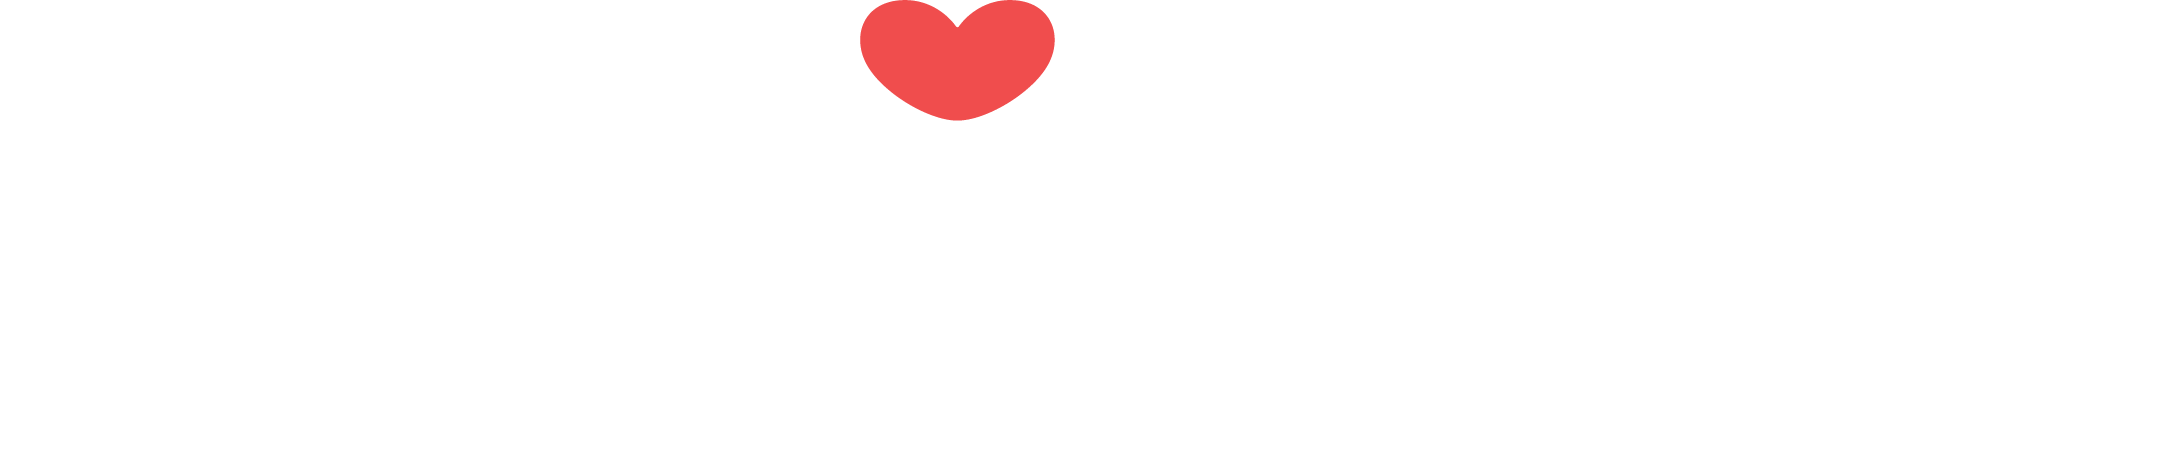 Emojibator logo